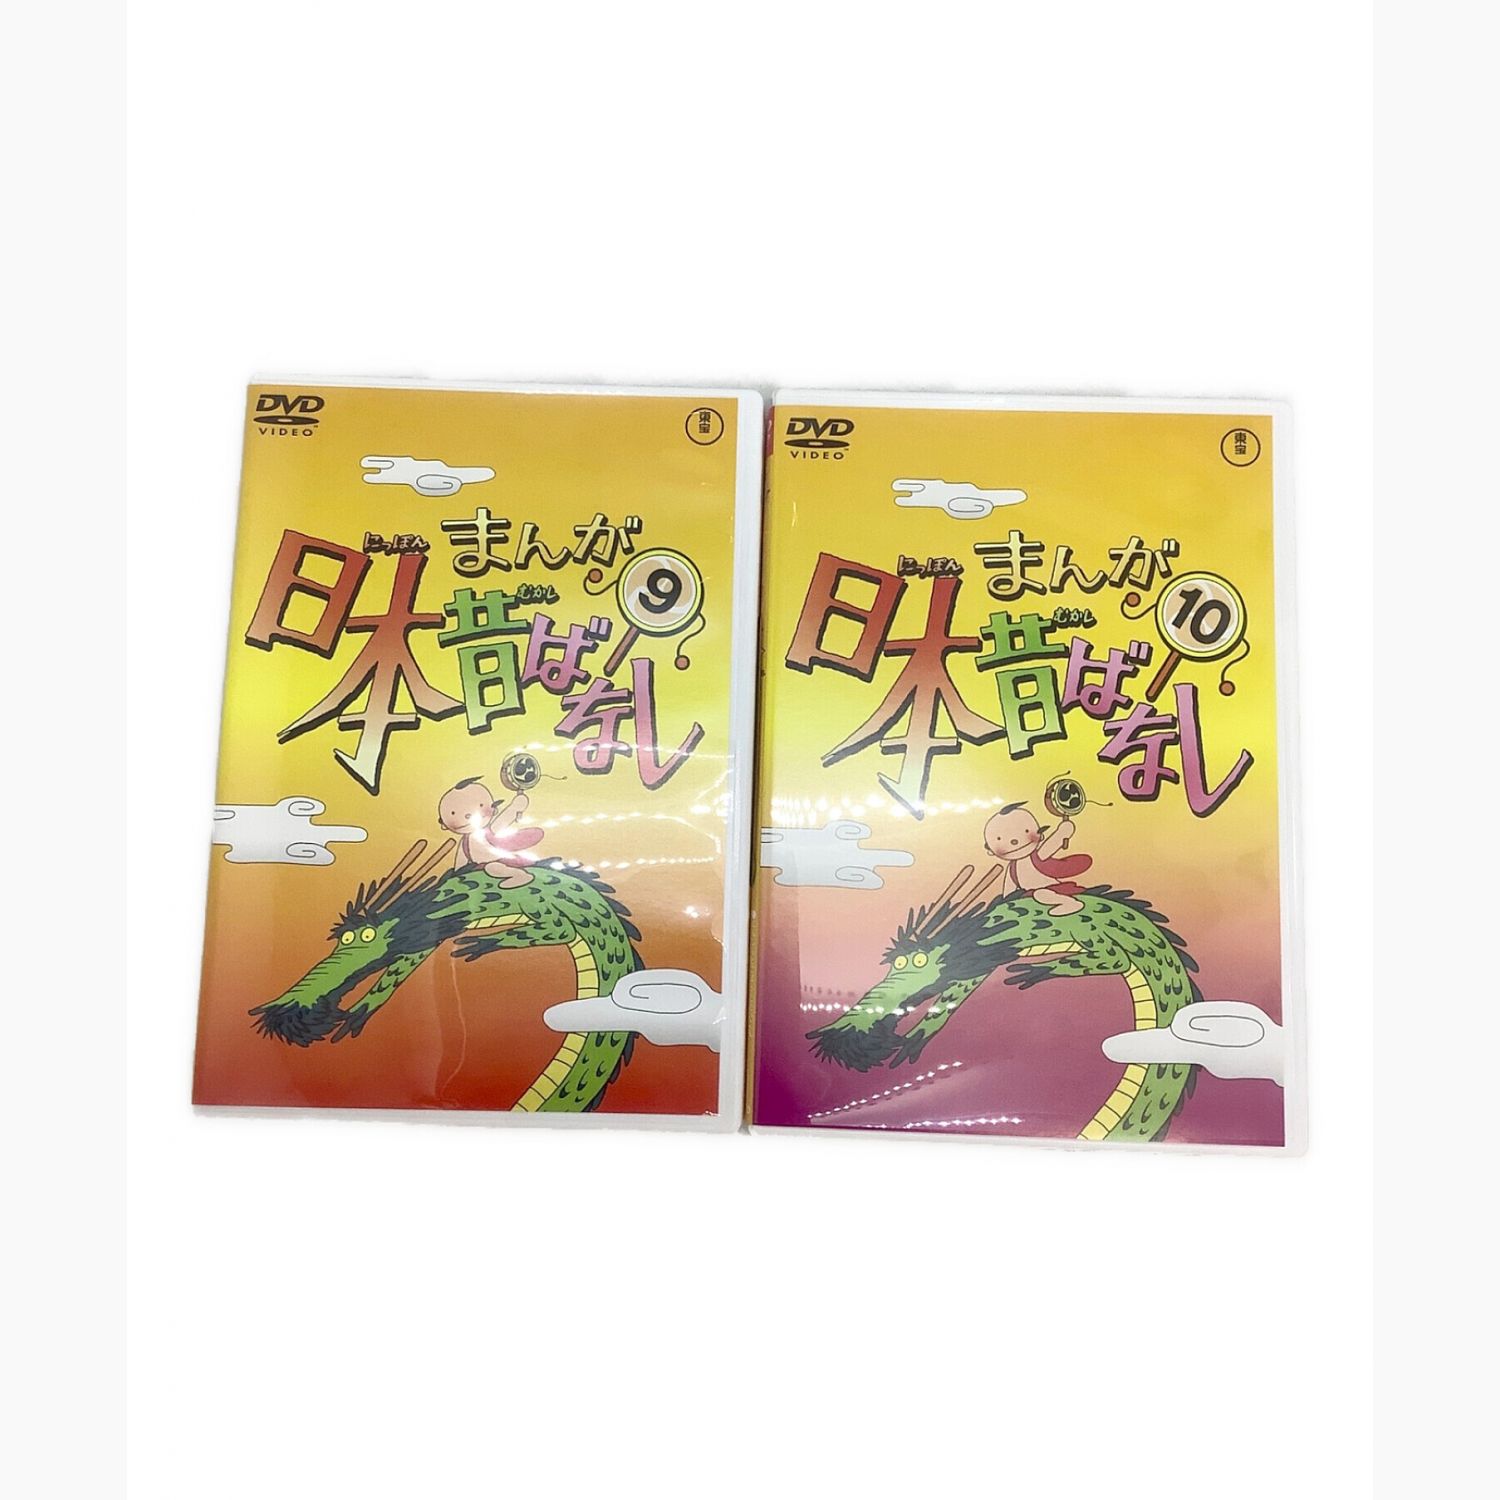 まんが日本昔ばなし (マンガニッポンムカシバナシ) DVDセット 第1集 